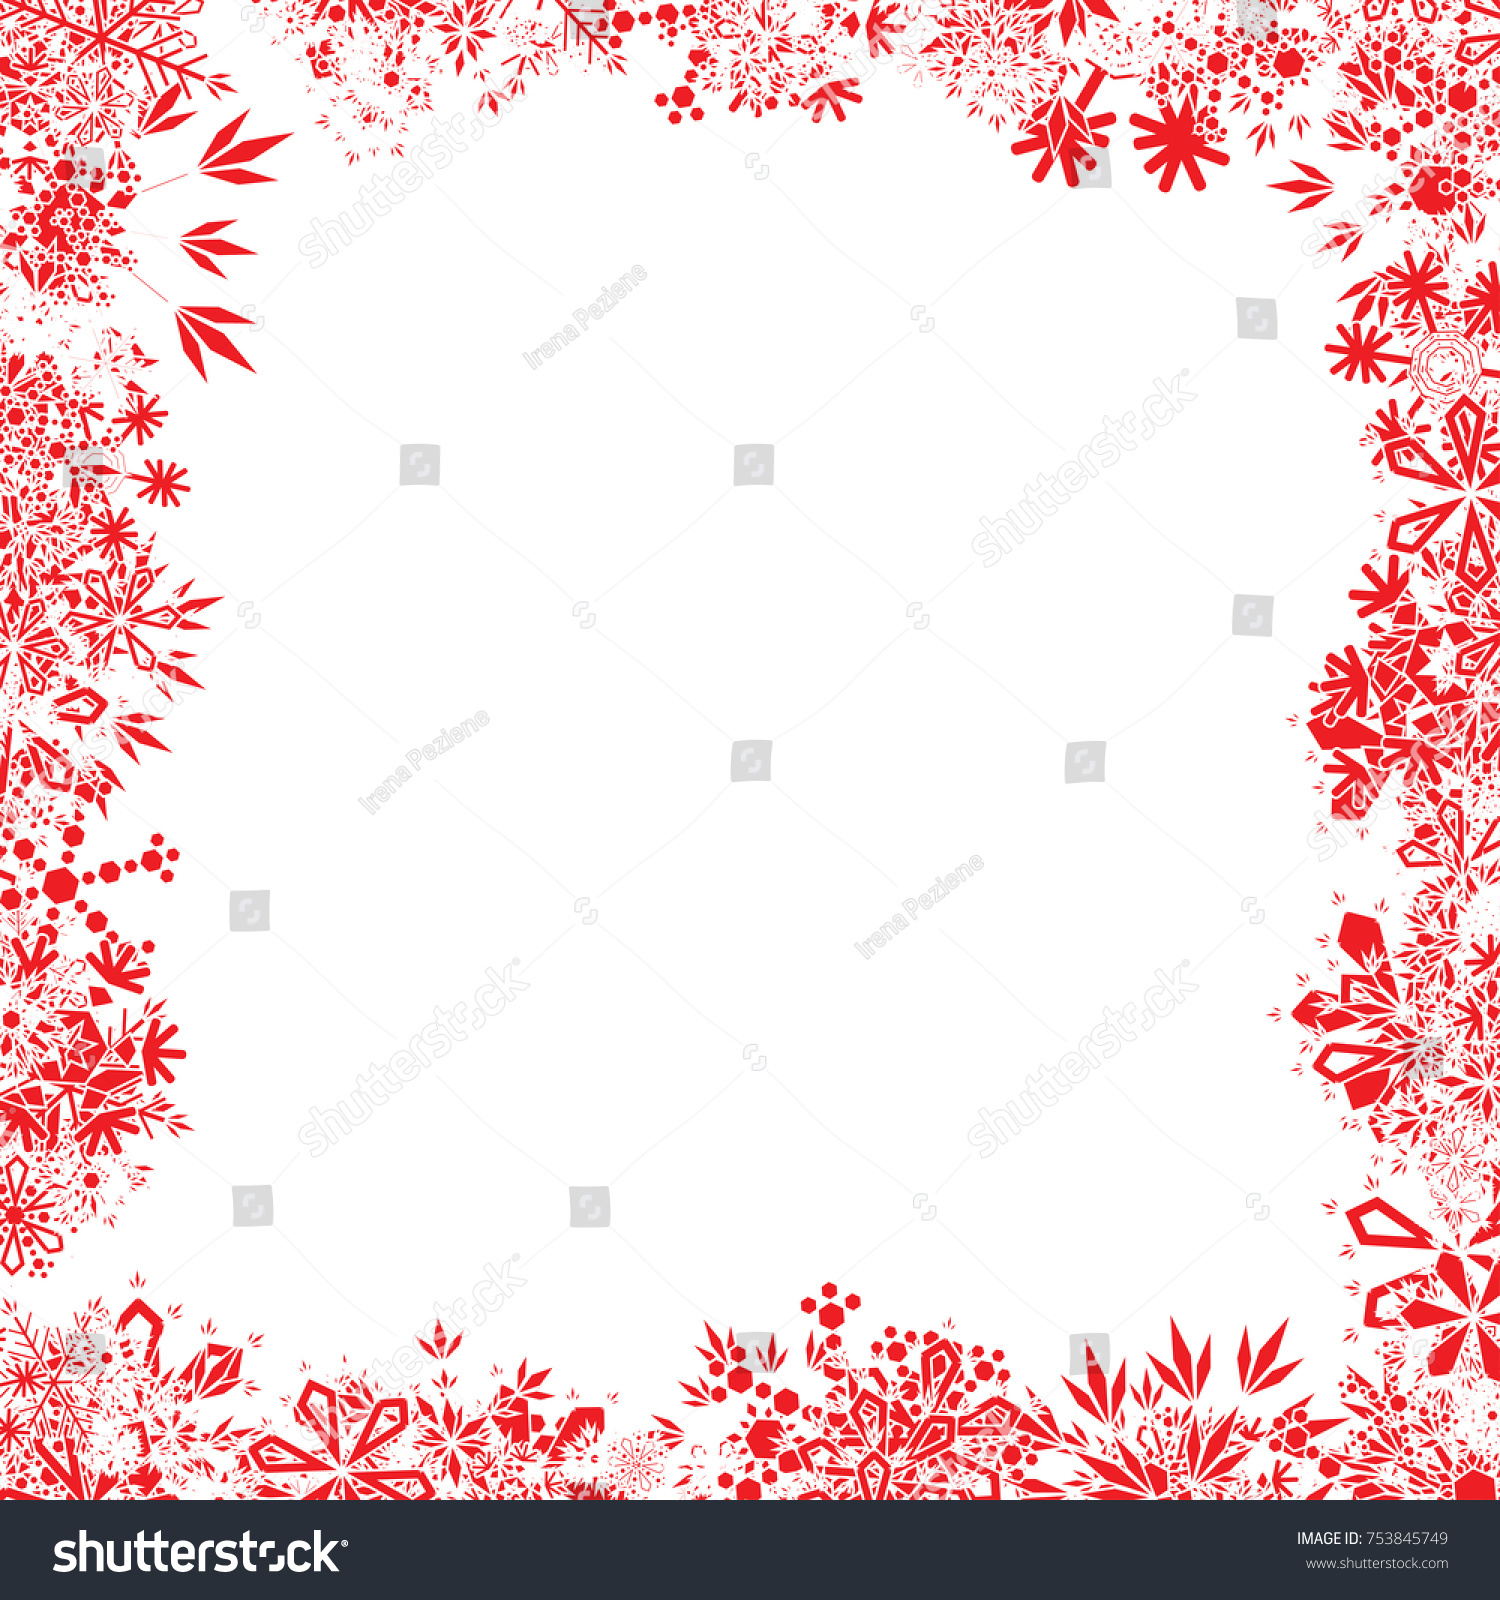 Red Christmas Snowflake Frame #753845749